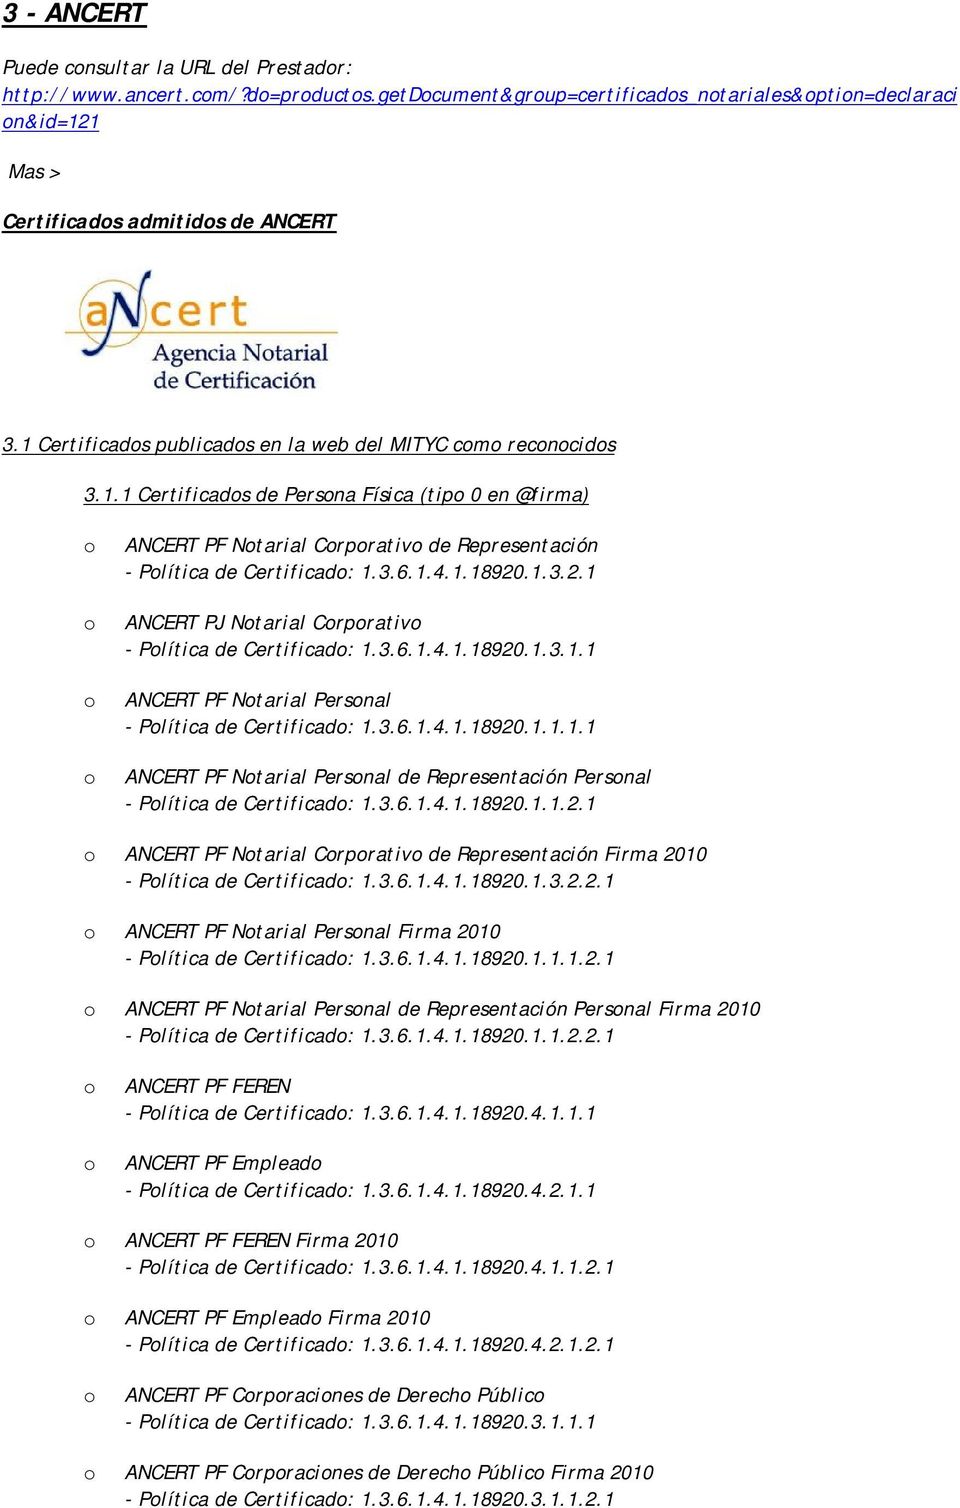 .1.3.2.1 ANCERT PJ Ntarial Crprativ - Plítica de Certificad: 1.3.6.1.4.1.18920.1.3.1.1 ANCERT PF Ntarial Persnal - Plítica de Certificad: 1.3.6.1.4.1.18920.1.1.1.1 ANCERT PF Ntarial Persnal de Representación Persnal - Plítica de Certificad: 1.